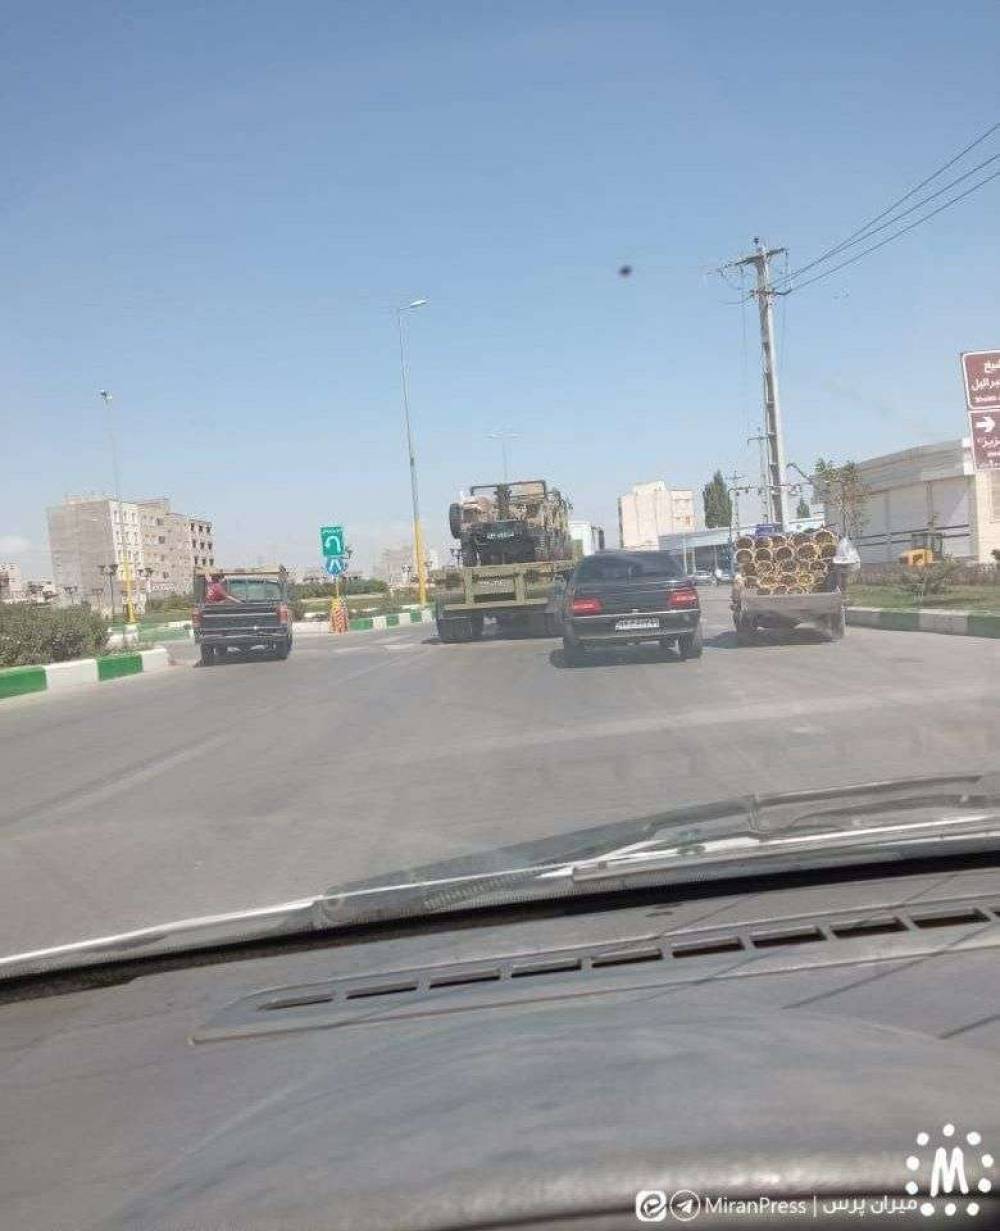 Իրանը ռազմական տեխնիկա է տեղակայում Ադրբեջանի հետ սահմանին. աղբյուր